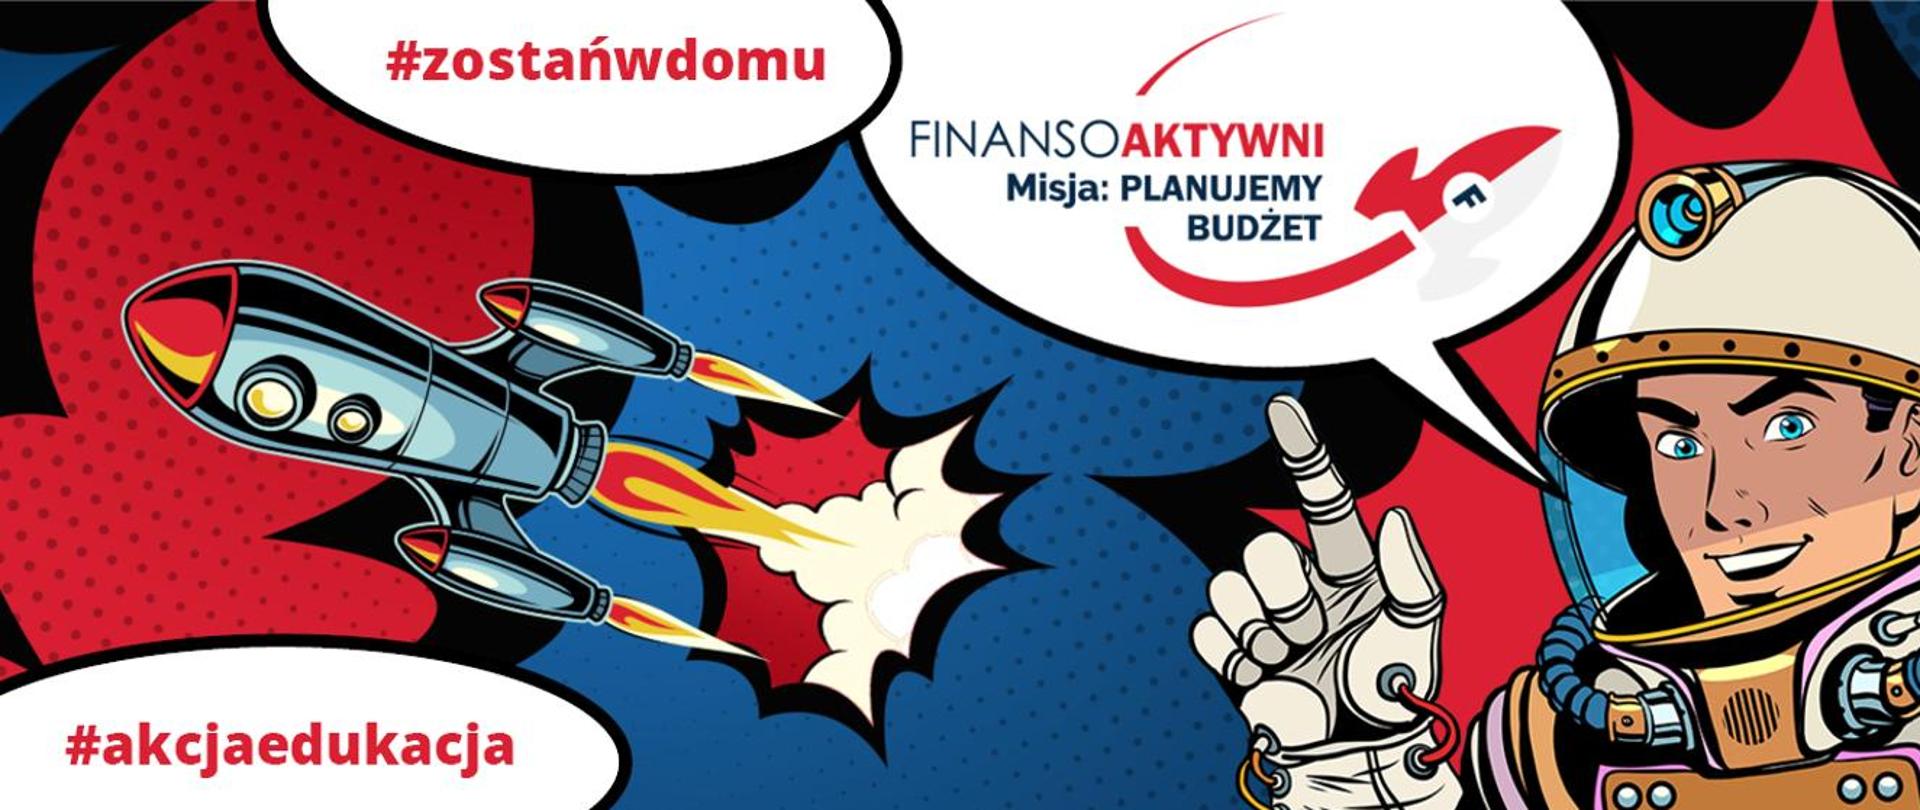 Komiksowa grafika z rakietą, kosmonautą i hasłami: #akcjaedukacja, #zostańwdomu, Finansowoaktywni, Misja: planujemy budżet